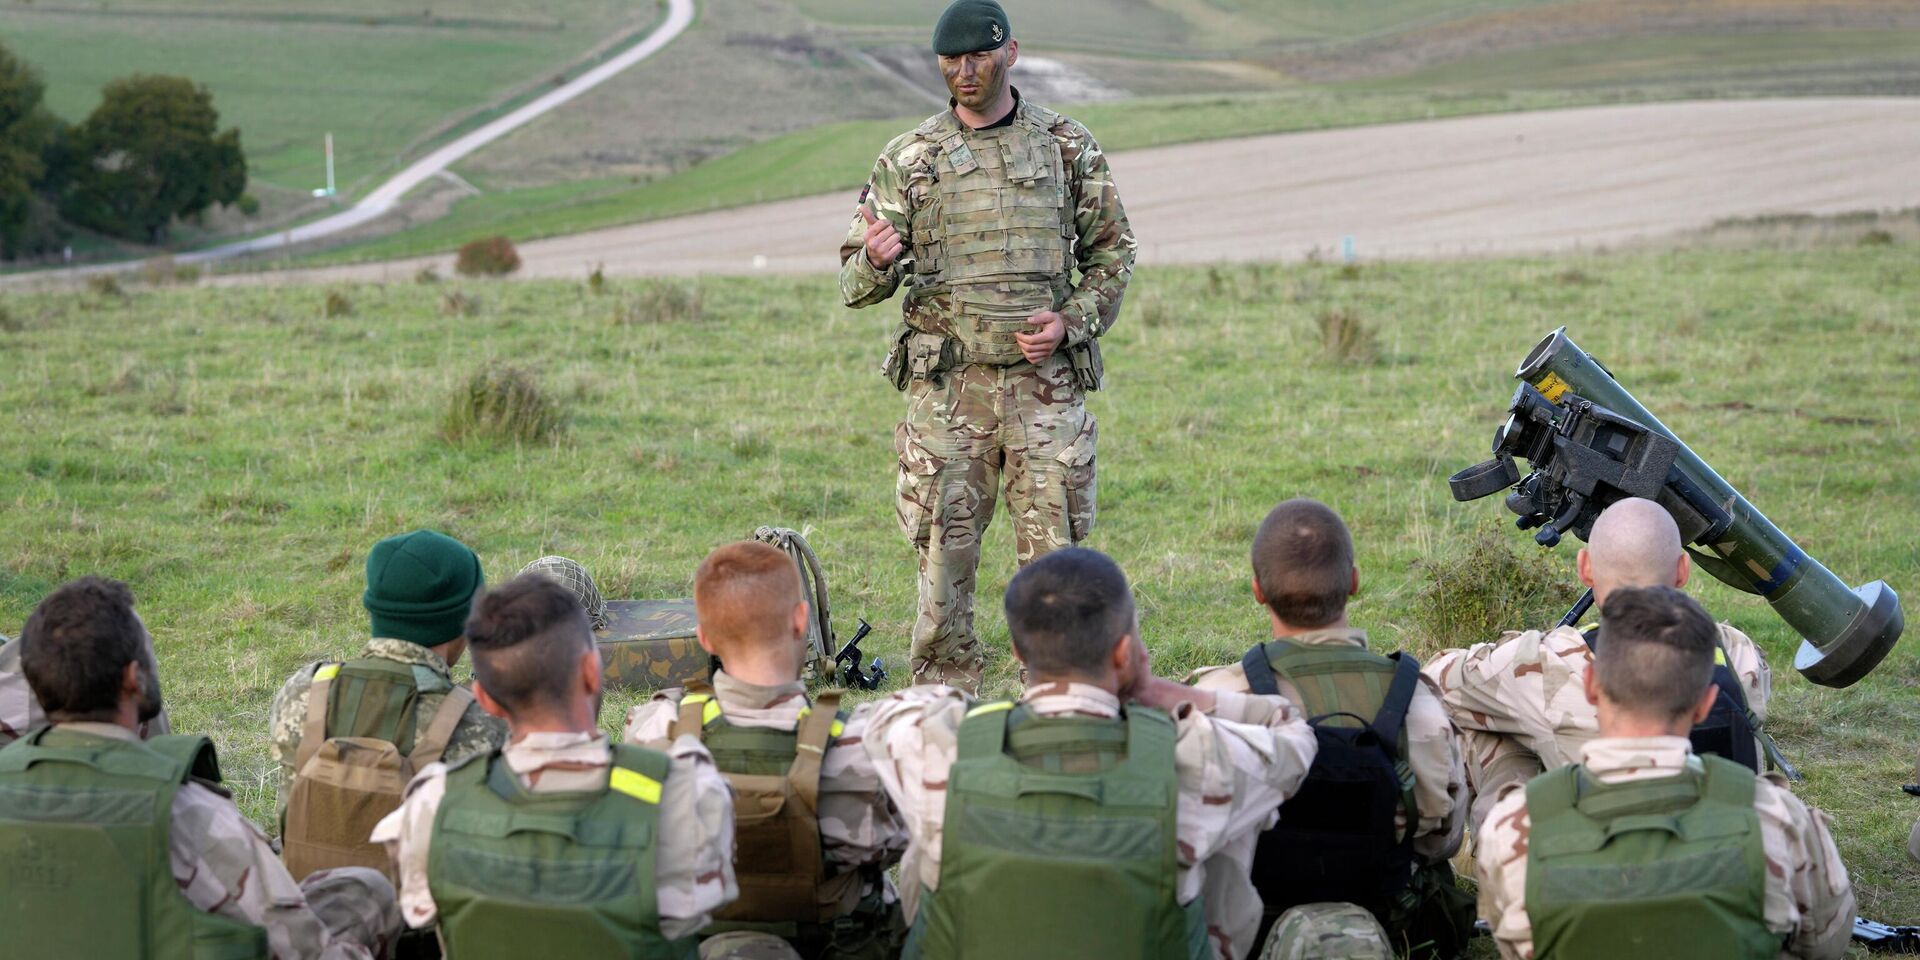 Обучение украинских солдат на военной базе в Великобритании. 12 октября 2022 года - ИноСМИ, 1920, 02.12.2022